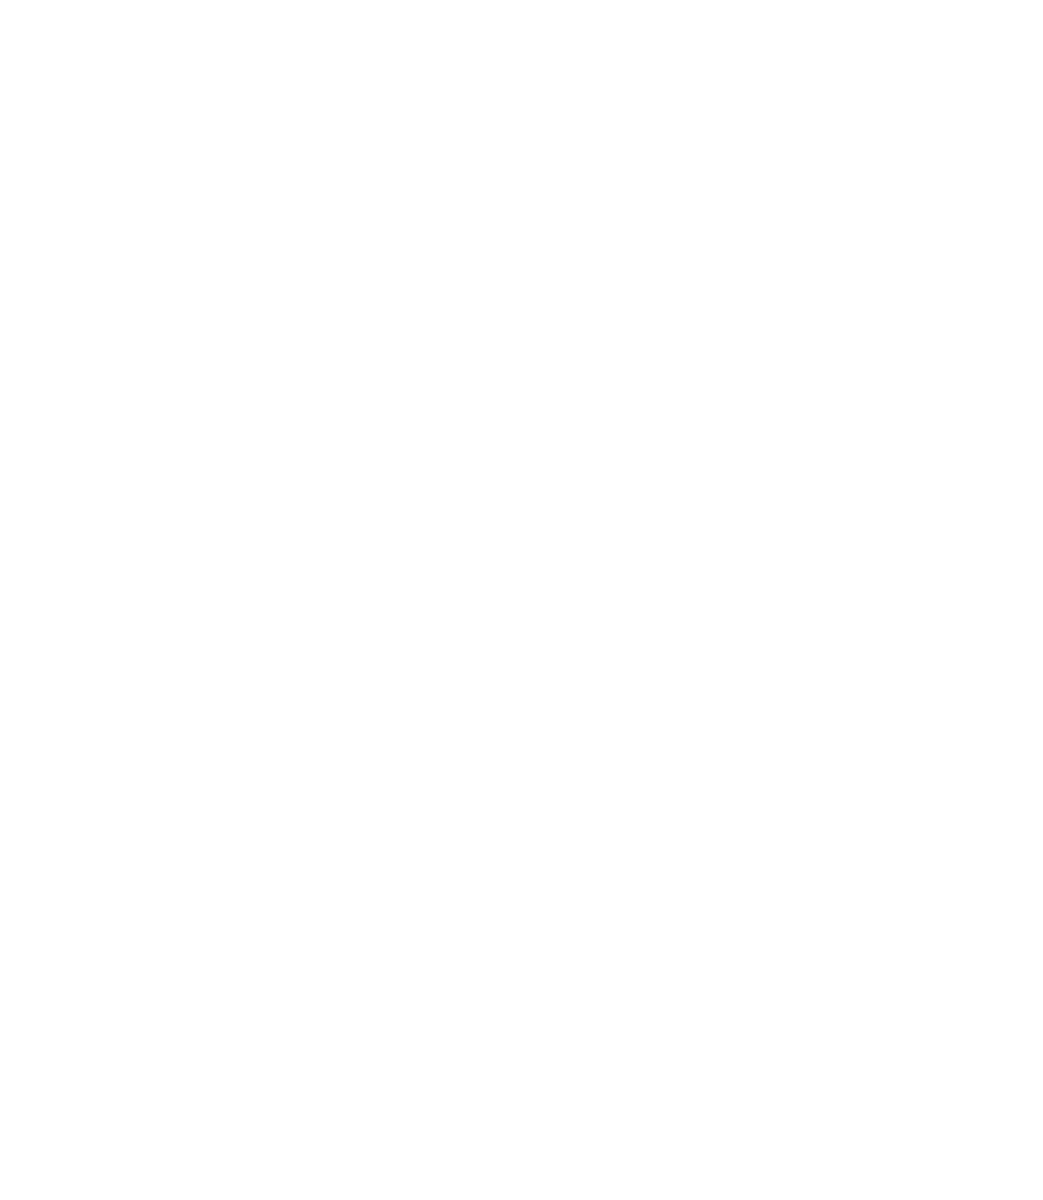 торт на День защитника отечества 23 февраля - торт Красный бархат - Бисквиты насыщенного красного цвета с шоколадным послевкусием в сочетании с сырным кремом. кондитерская Яхонт Иркутск